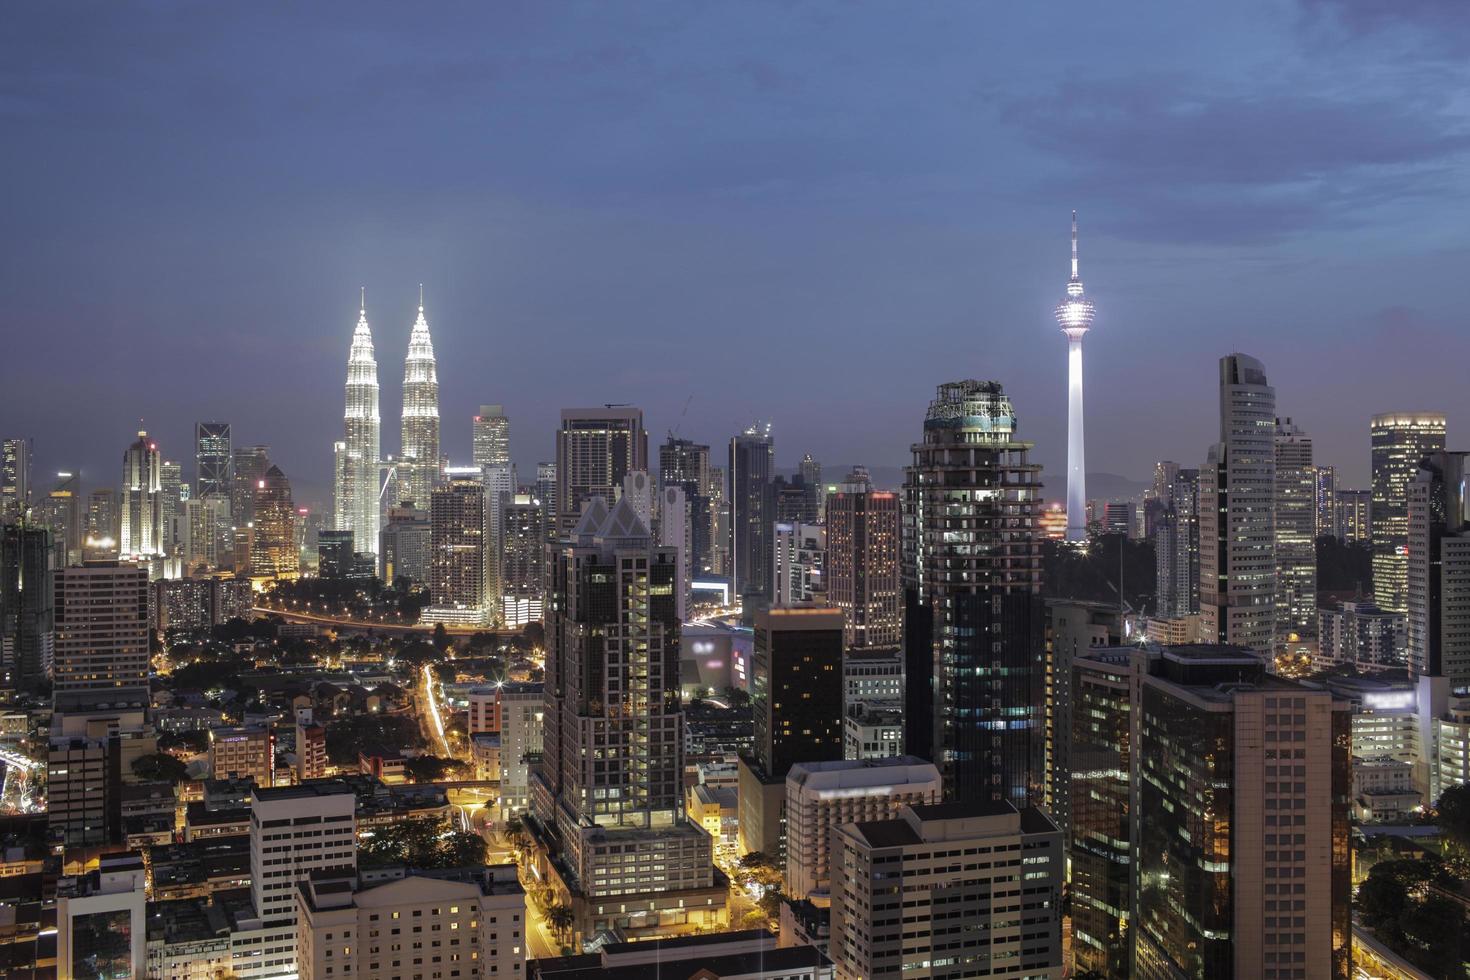 Kuala Lumpur, Malaysia, 2020 - Night at Kuala Lumpur photo